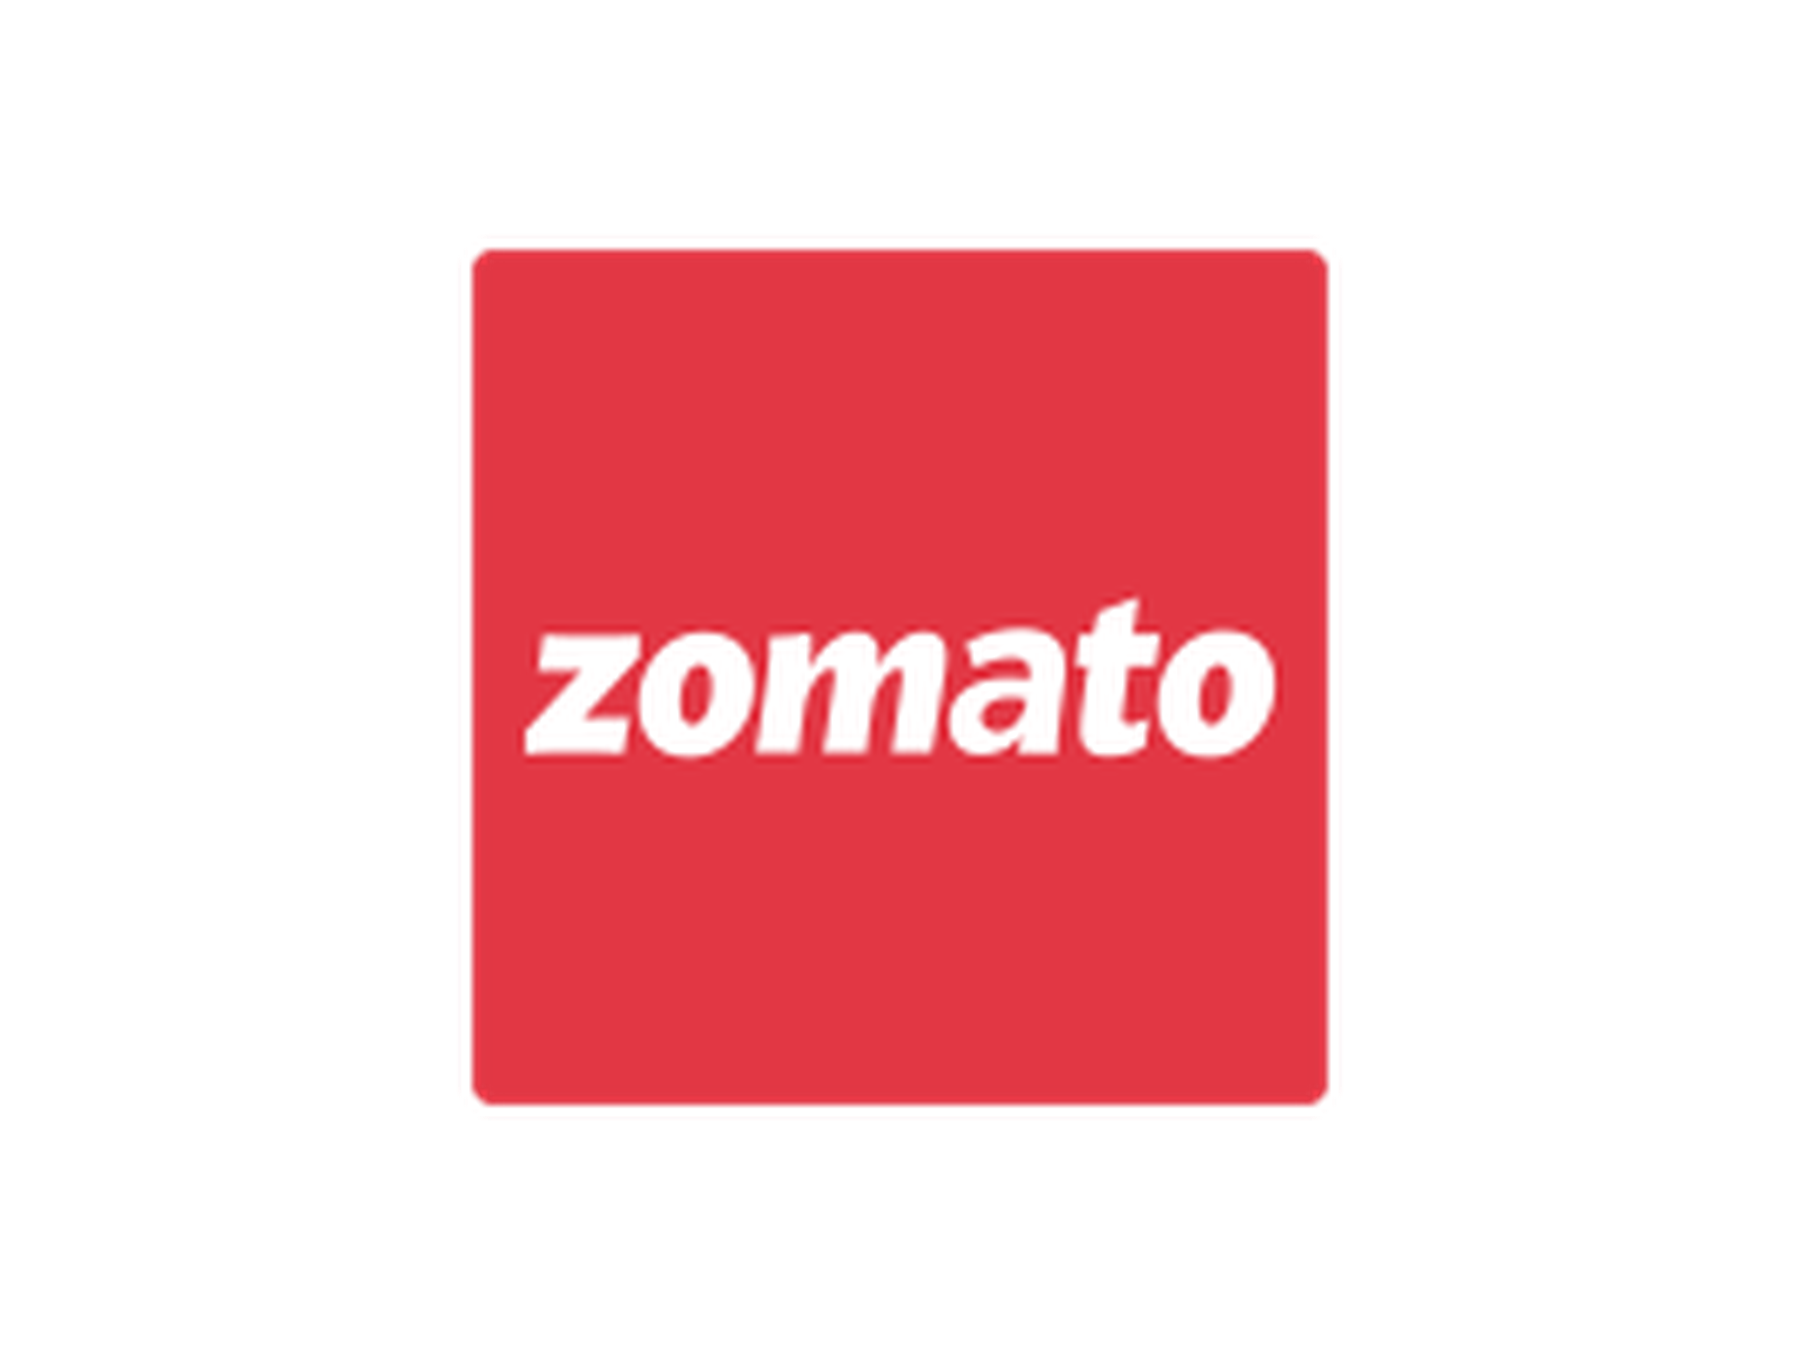 Zomato Coupon Code